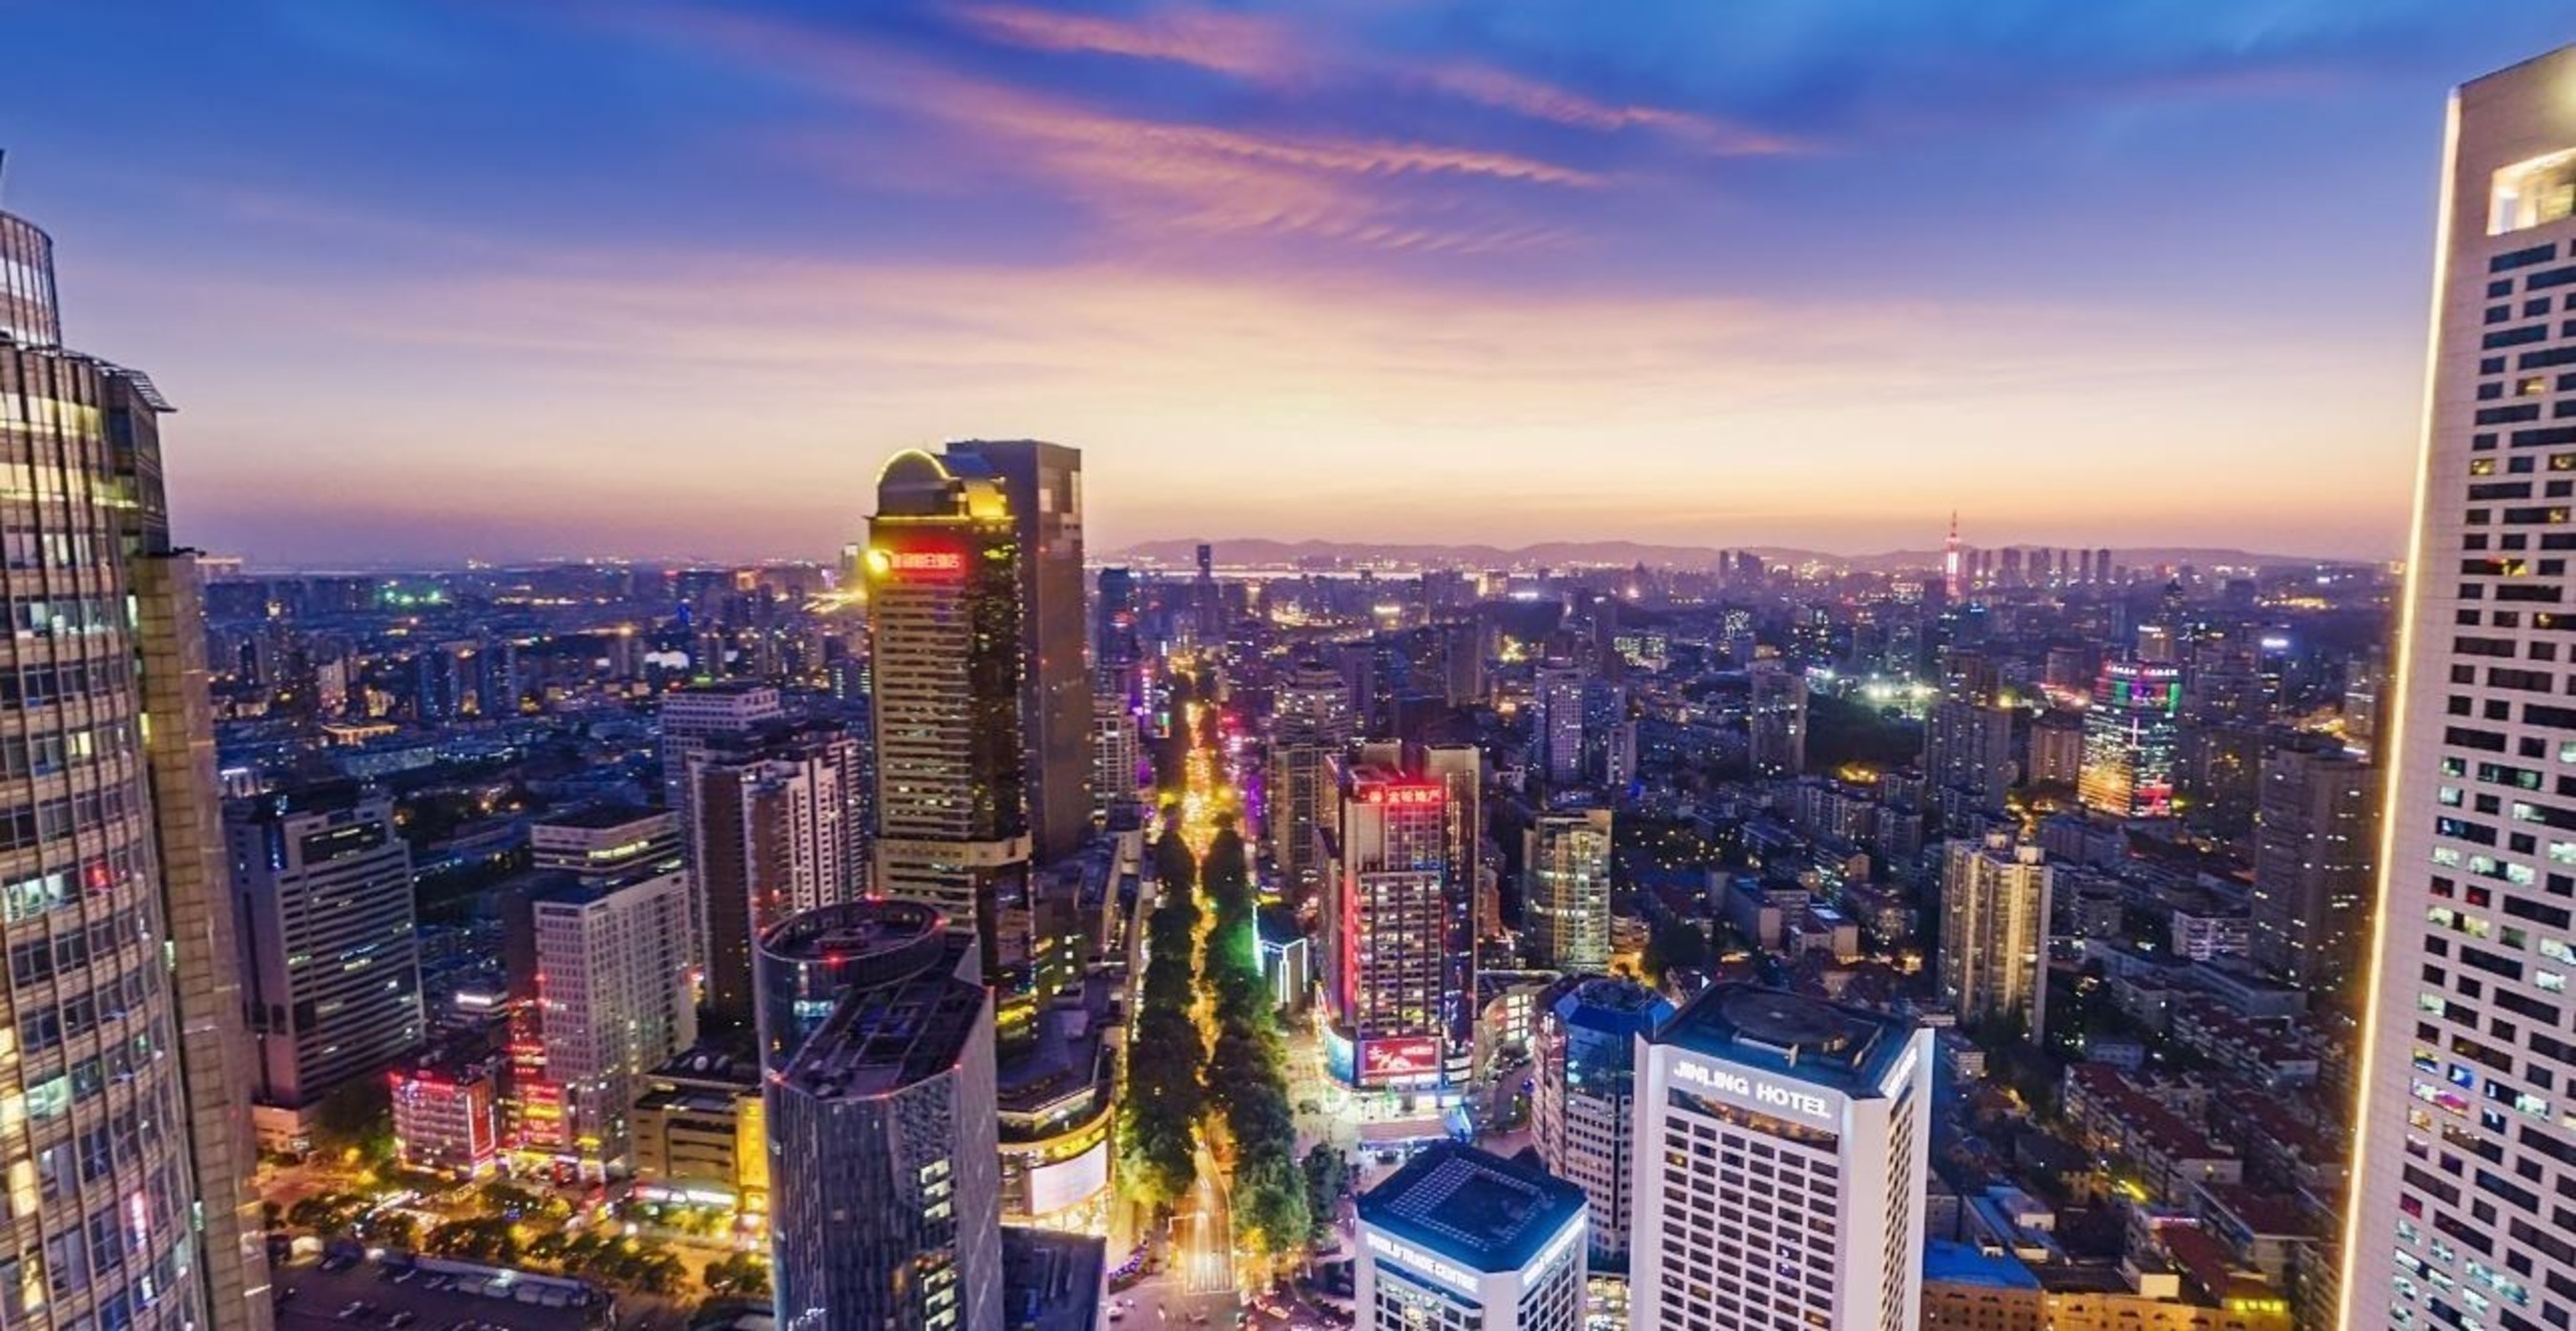 Business District - Xinjiekou Nanjing panoramic view by Jinling Laoxia